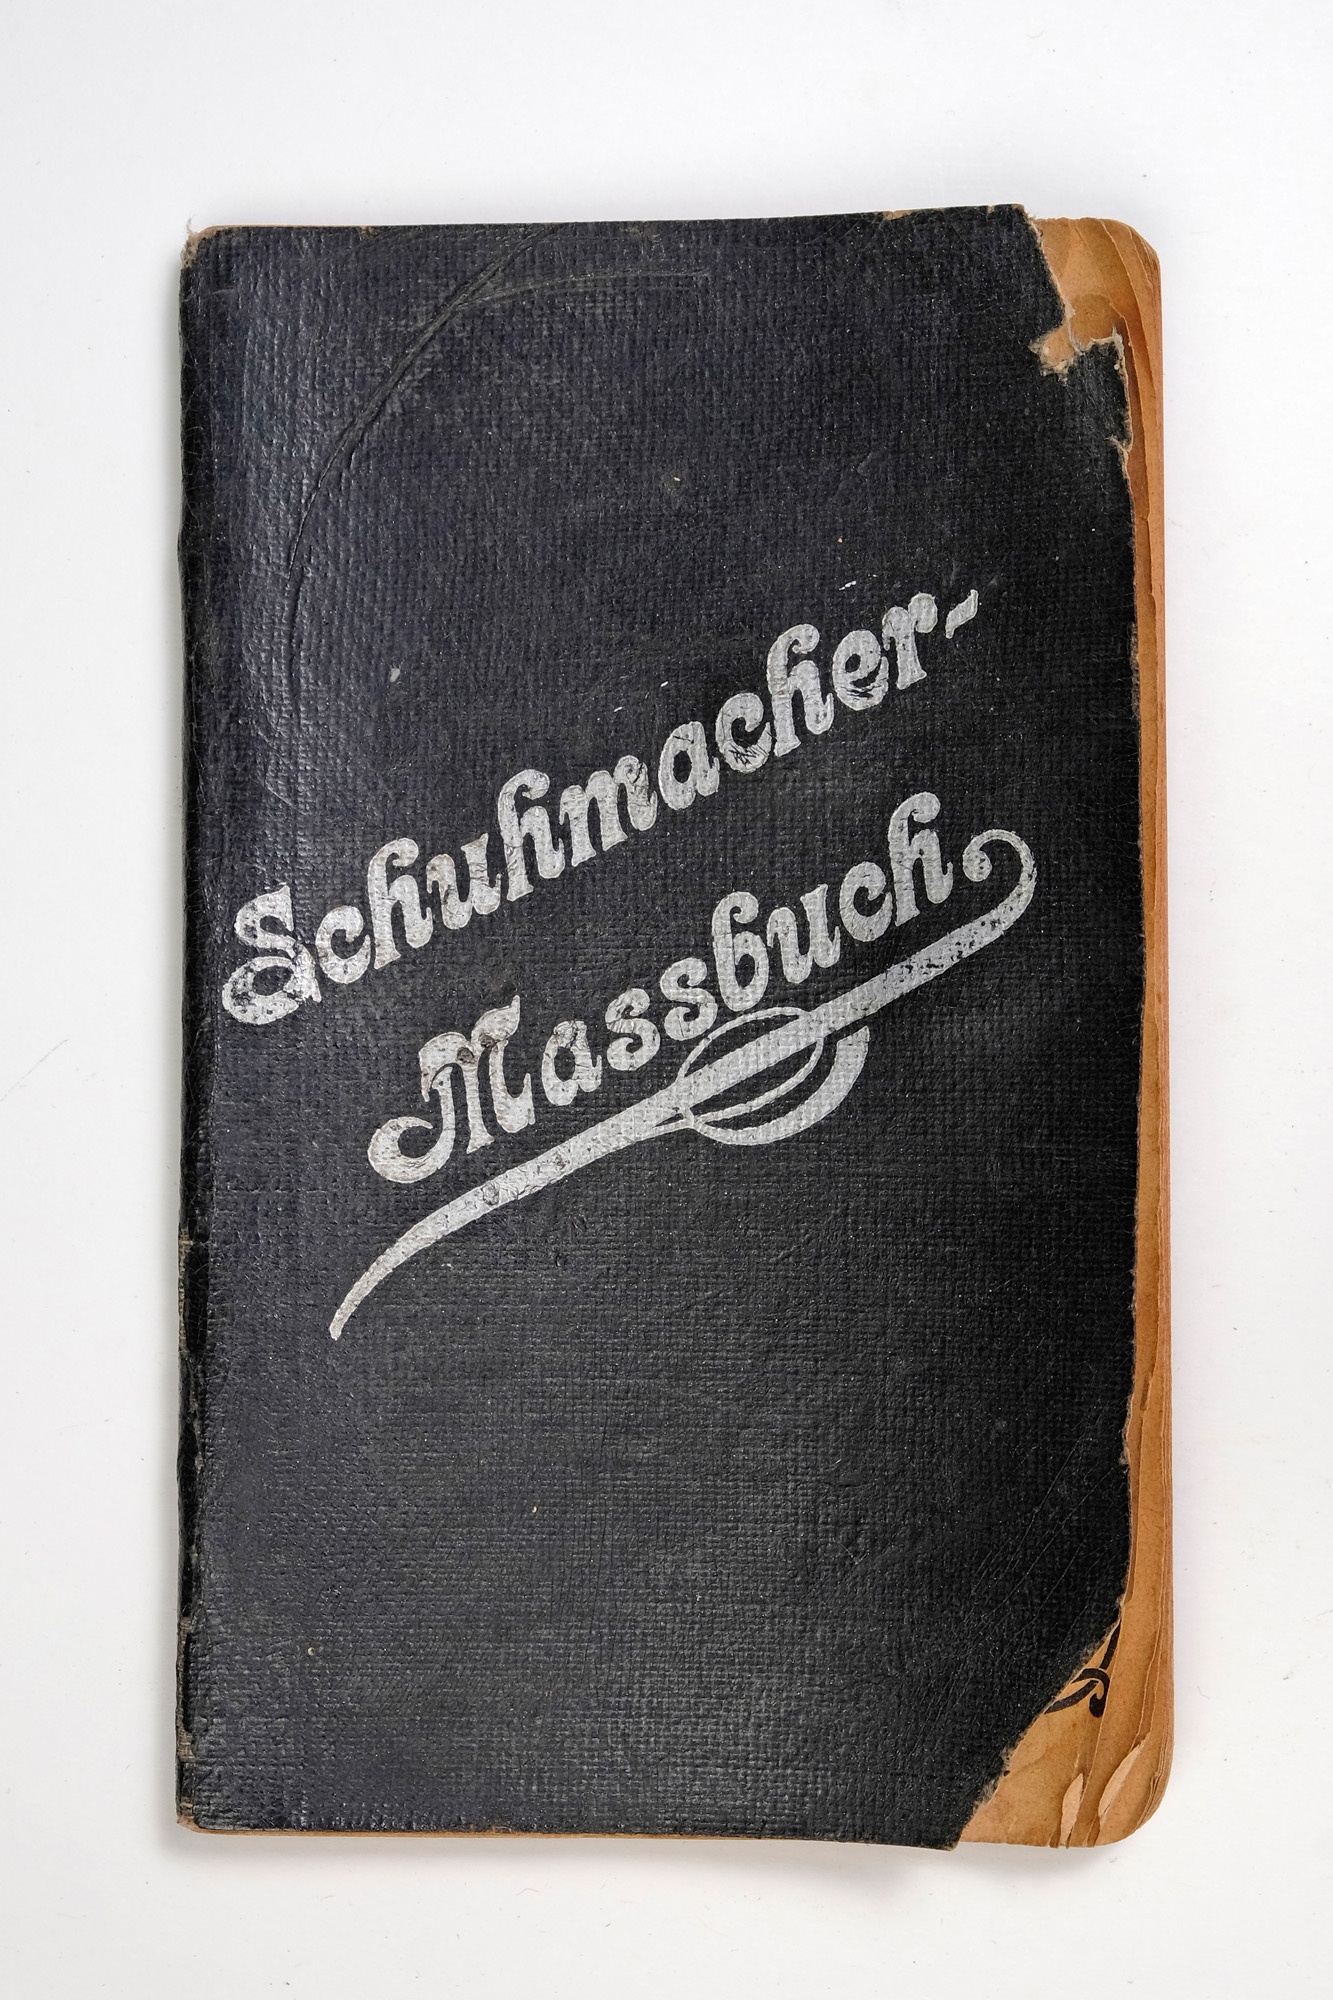 Schuhmacher - Maßbuch (Wegemuseum CC BY-SA)